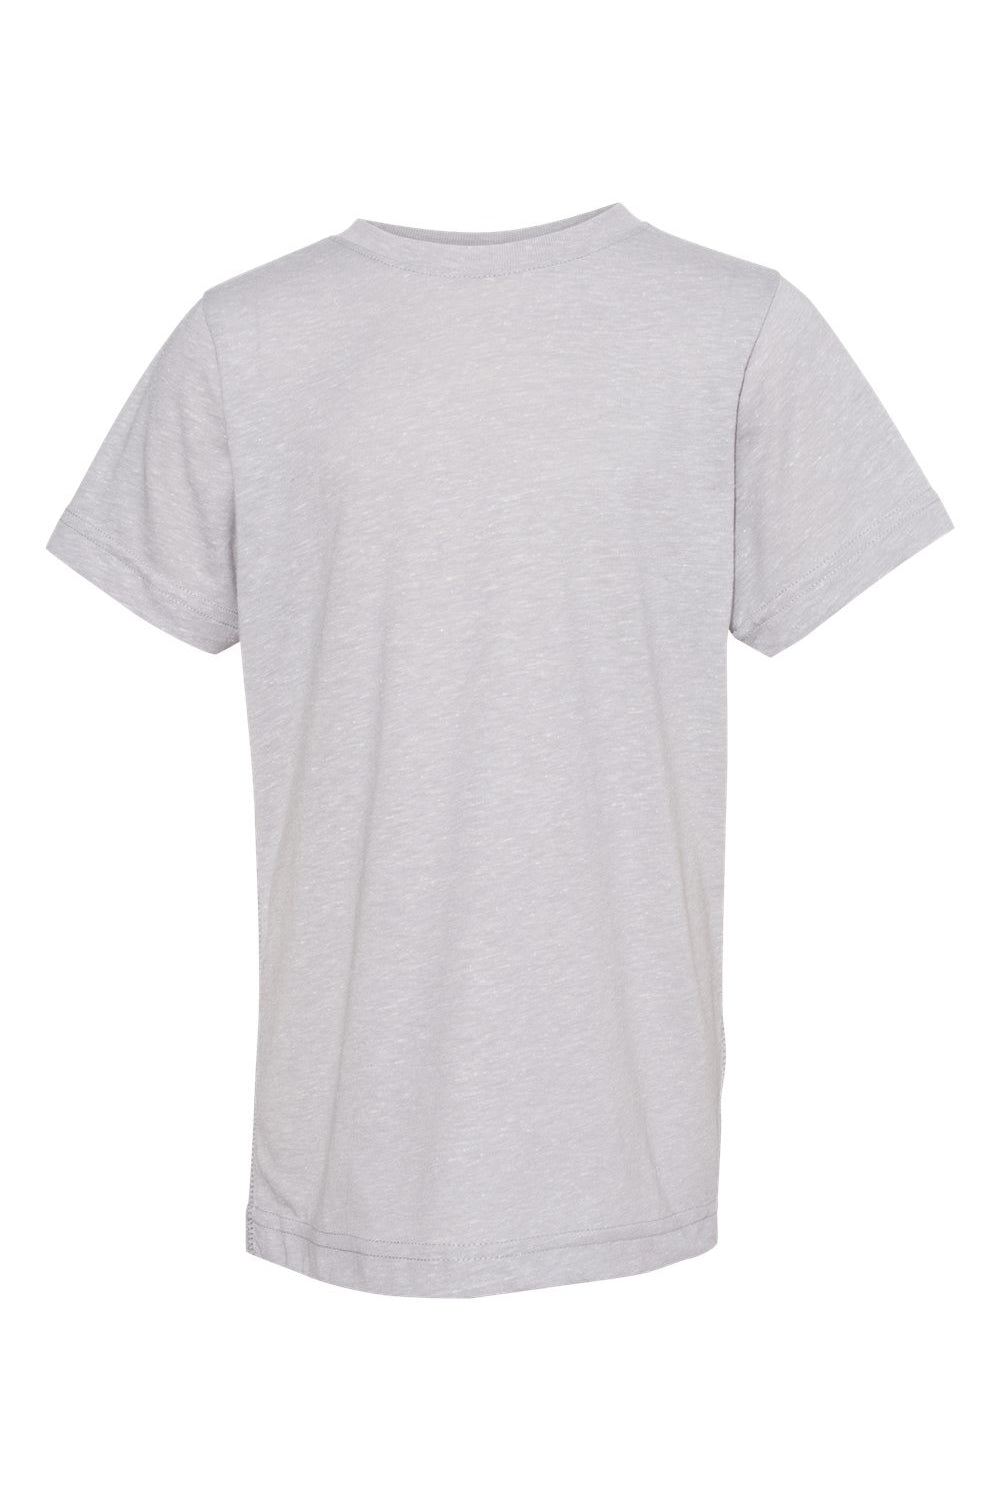 LAT 6191 Youth Harborside Melange Short Sleeve Crewneck T-Shirt Grey Flat Front